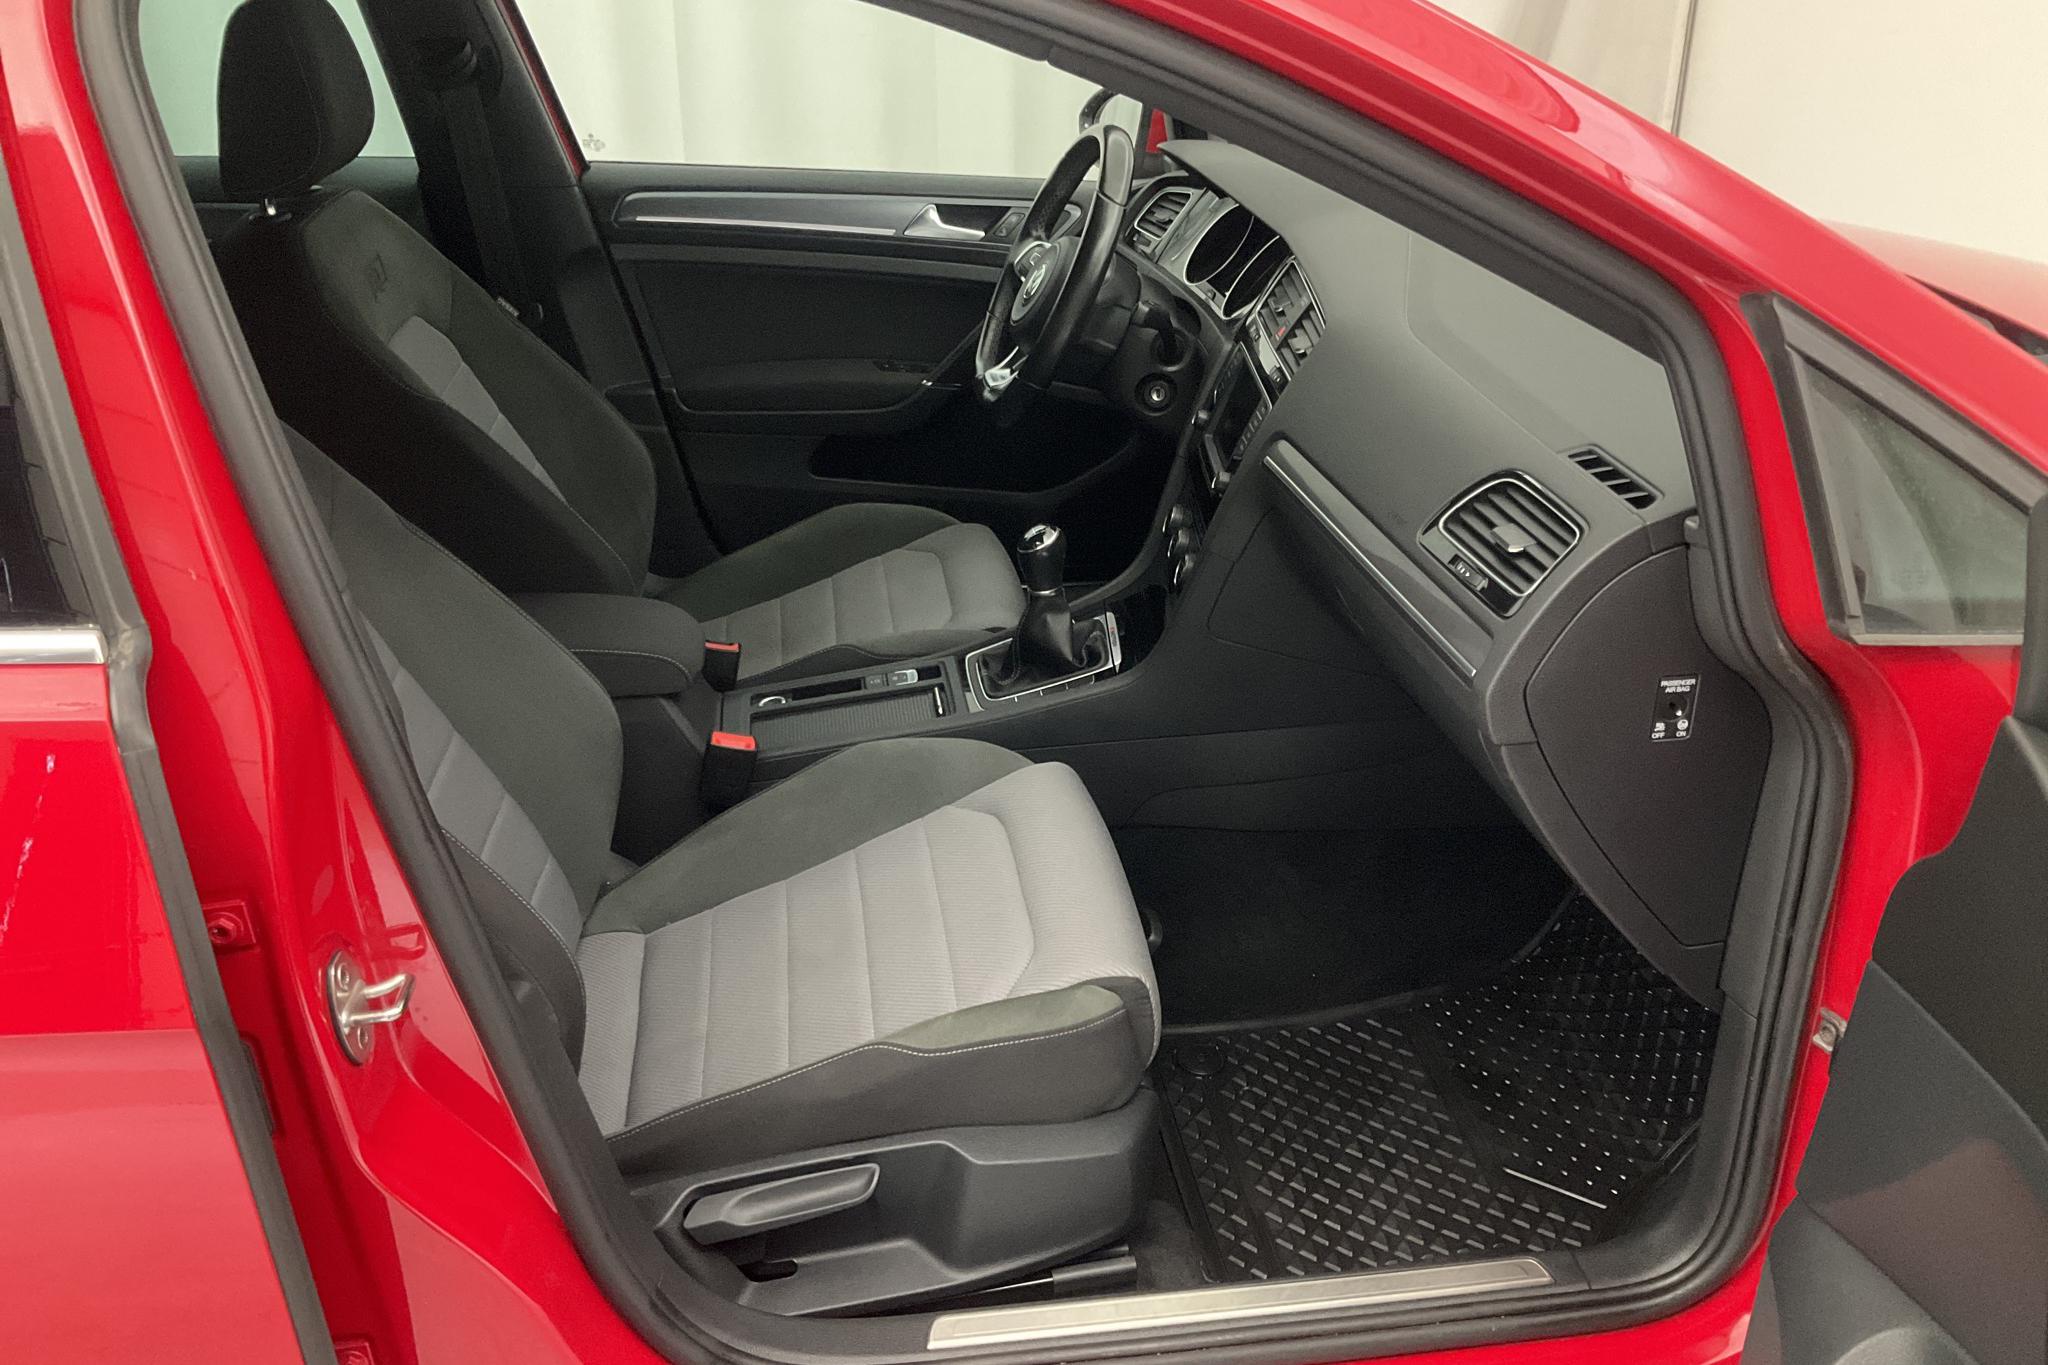 VW Golf VII 2.0 TDI BlueMotion Technology Sportscombi 4Motion (150hk) - 10 592 mil - Manuell - röd - 2017